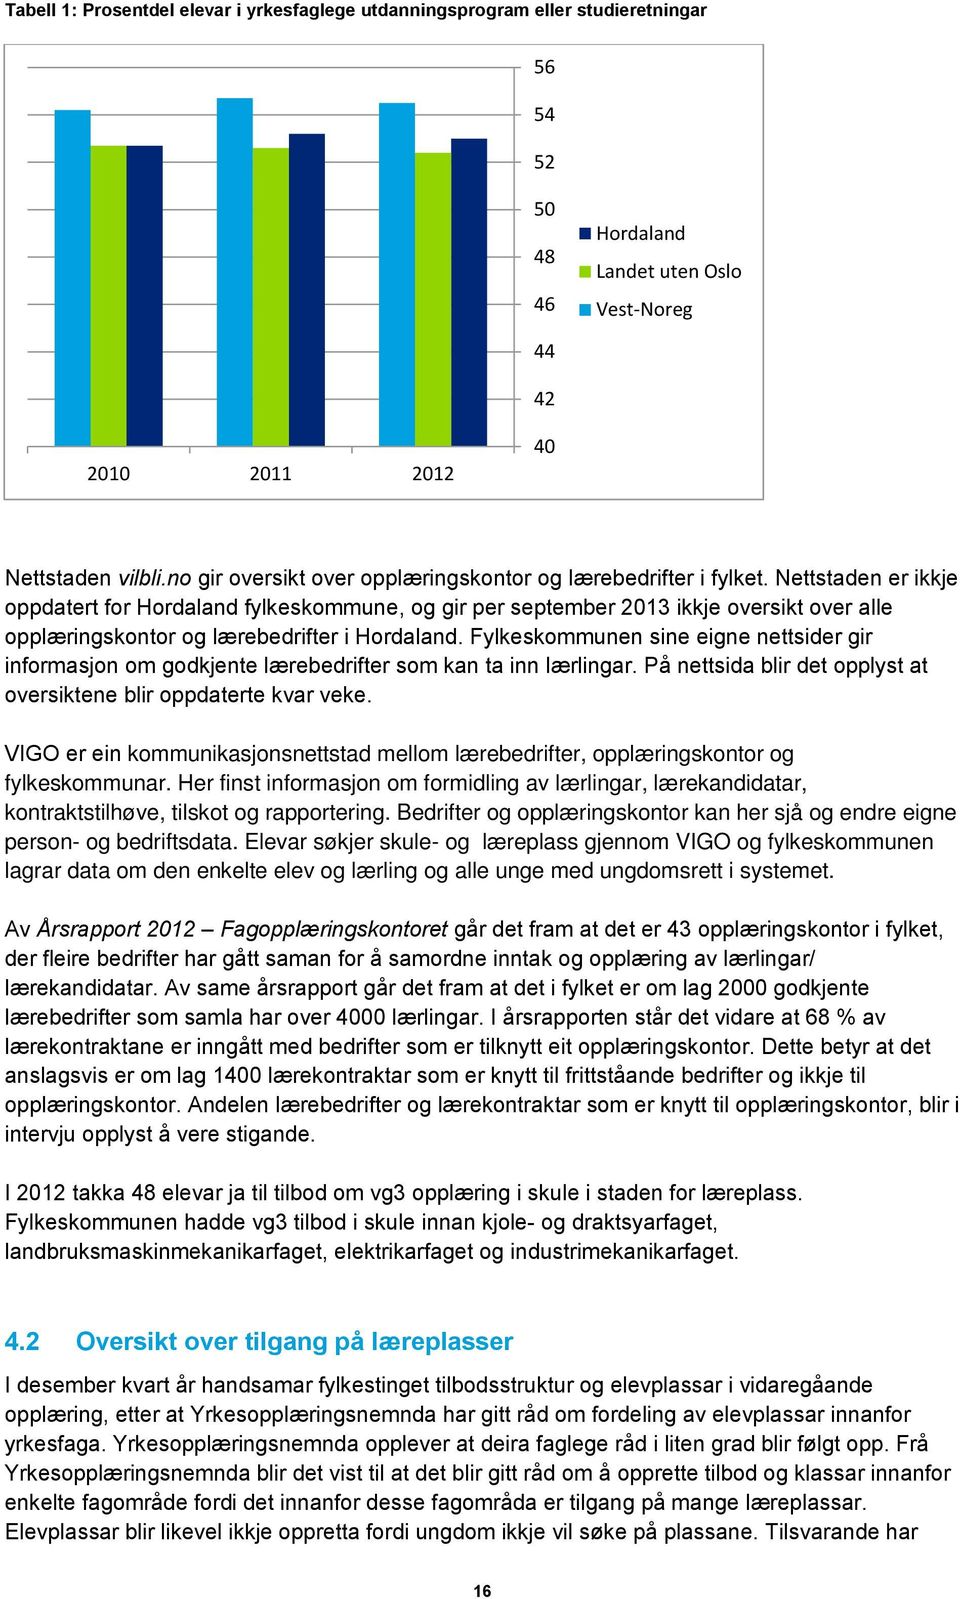 Nettstaden er ikkje oppdatert for Hordaland fylkeskommune, og gir per september 2013 ikkje oversikt over alle opplæringskontor og lærebedrifter i Hordaland.